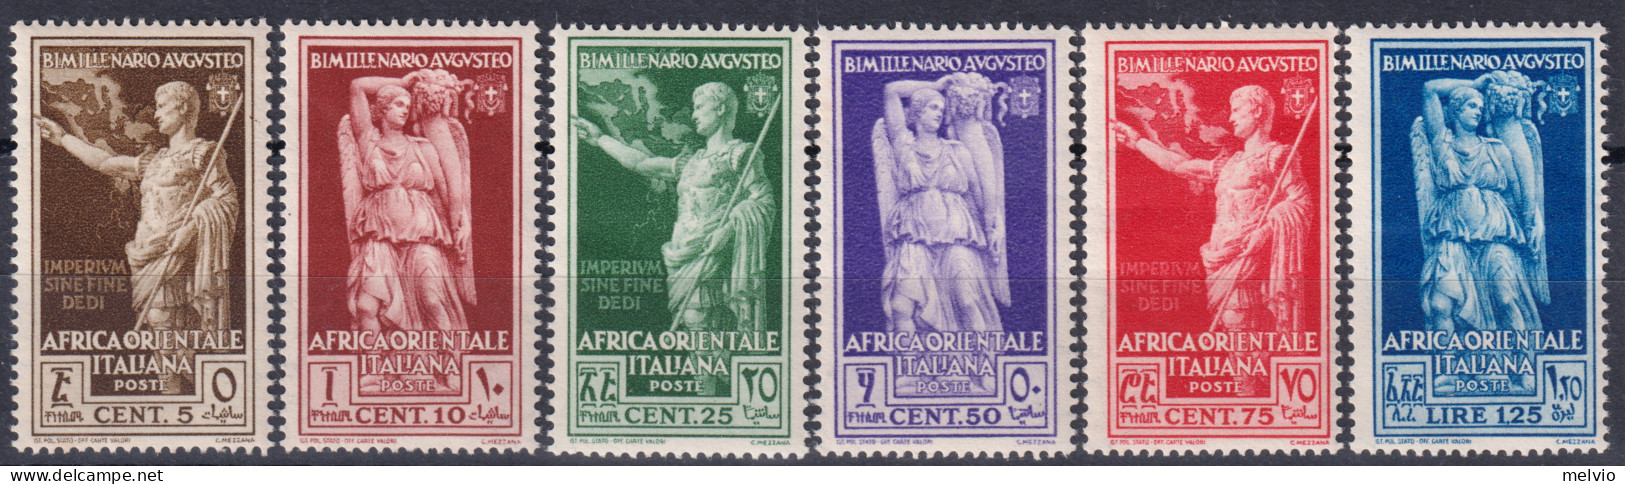 1938-Africa Orientale Italiana (MNH=**) Serie 5 Valori Augusto (21/6) - Italian Eastern Africa